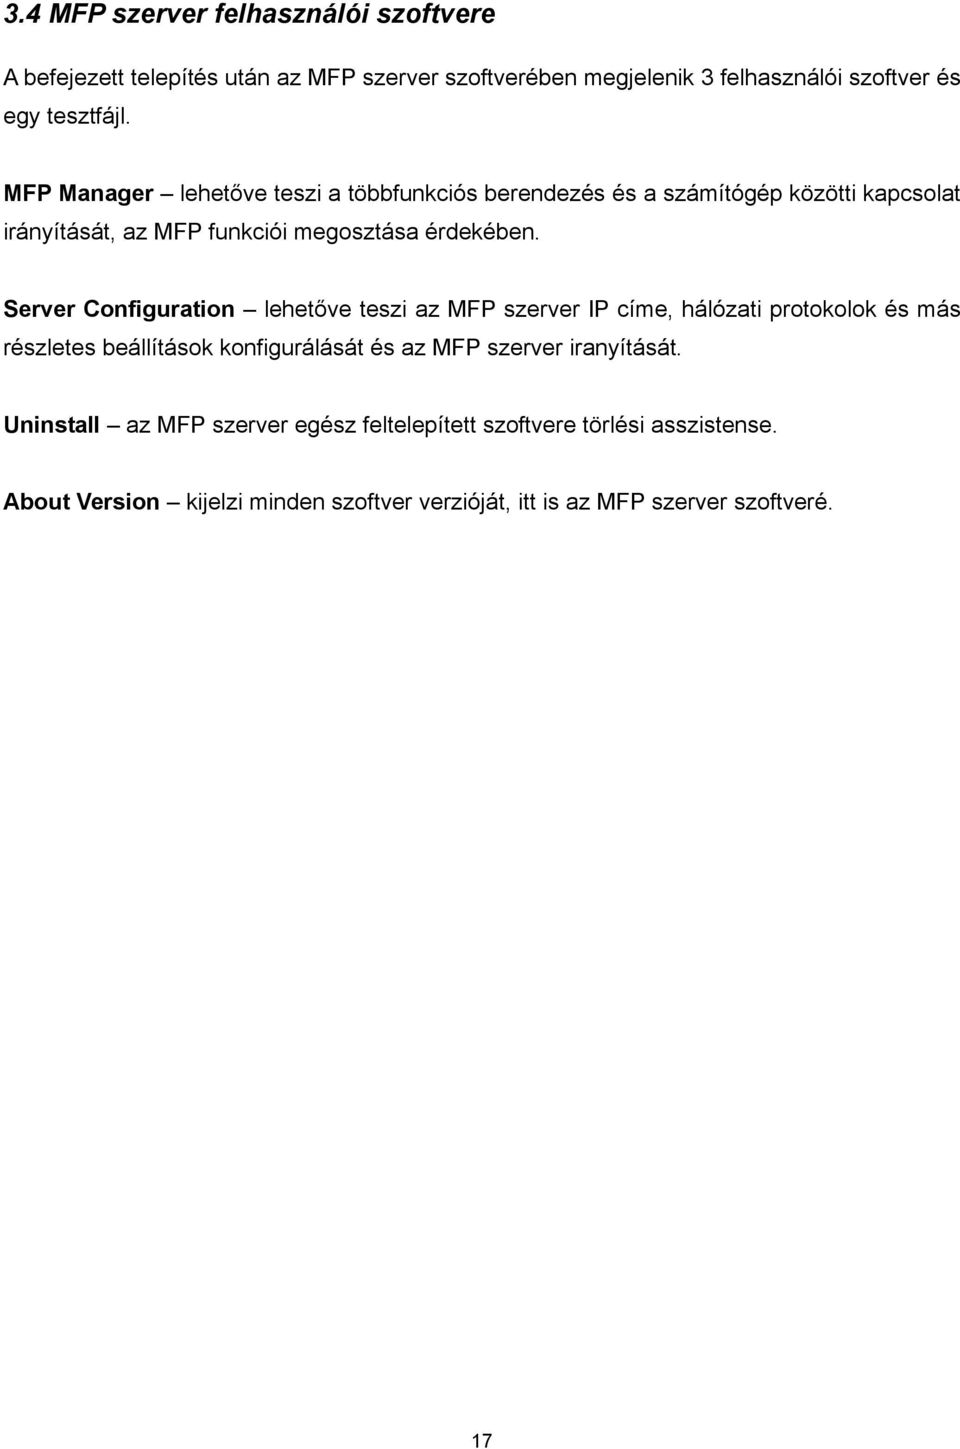 Server Configuration lehetőve teszi az MFP szerver IP címe, hálózati protokolok és más részletes beállítások konfigurálását és az MFP szerver